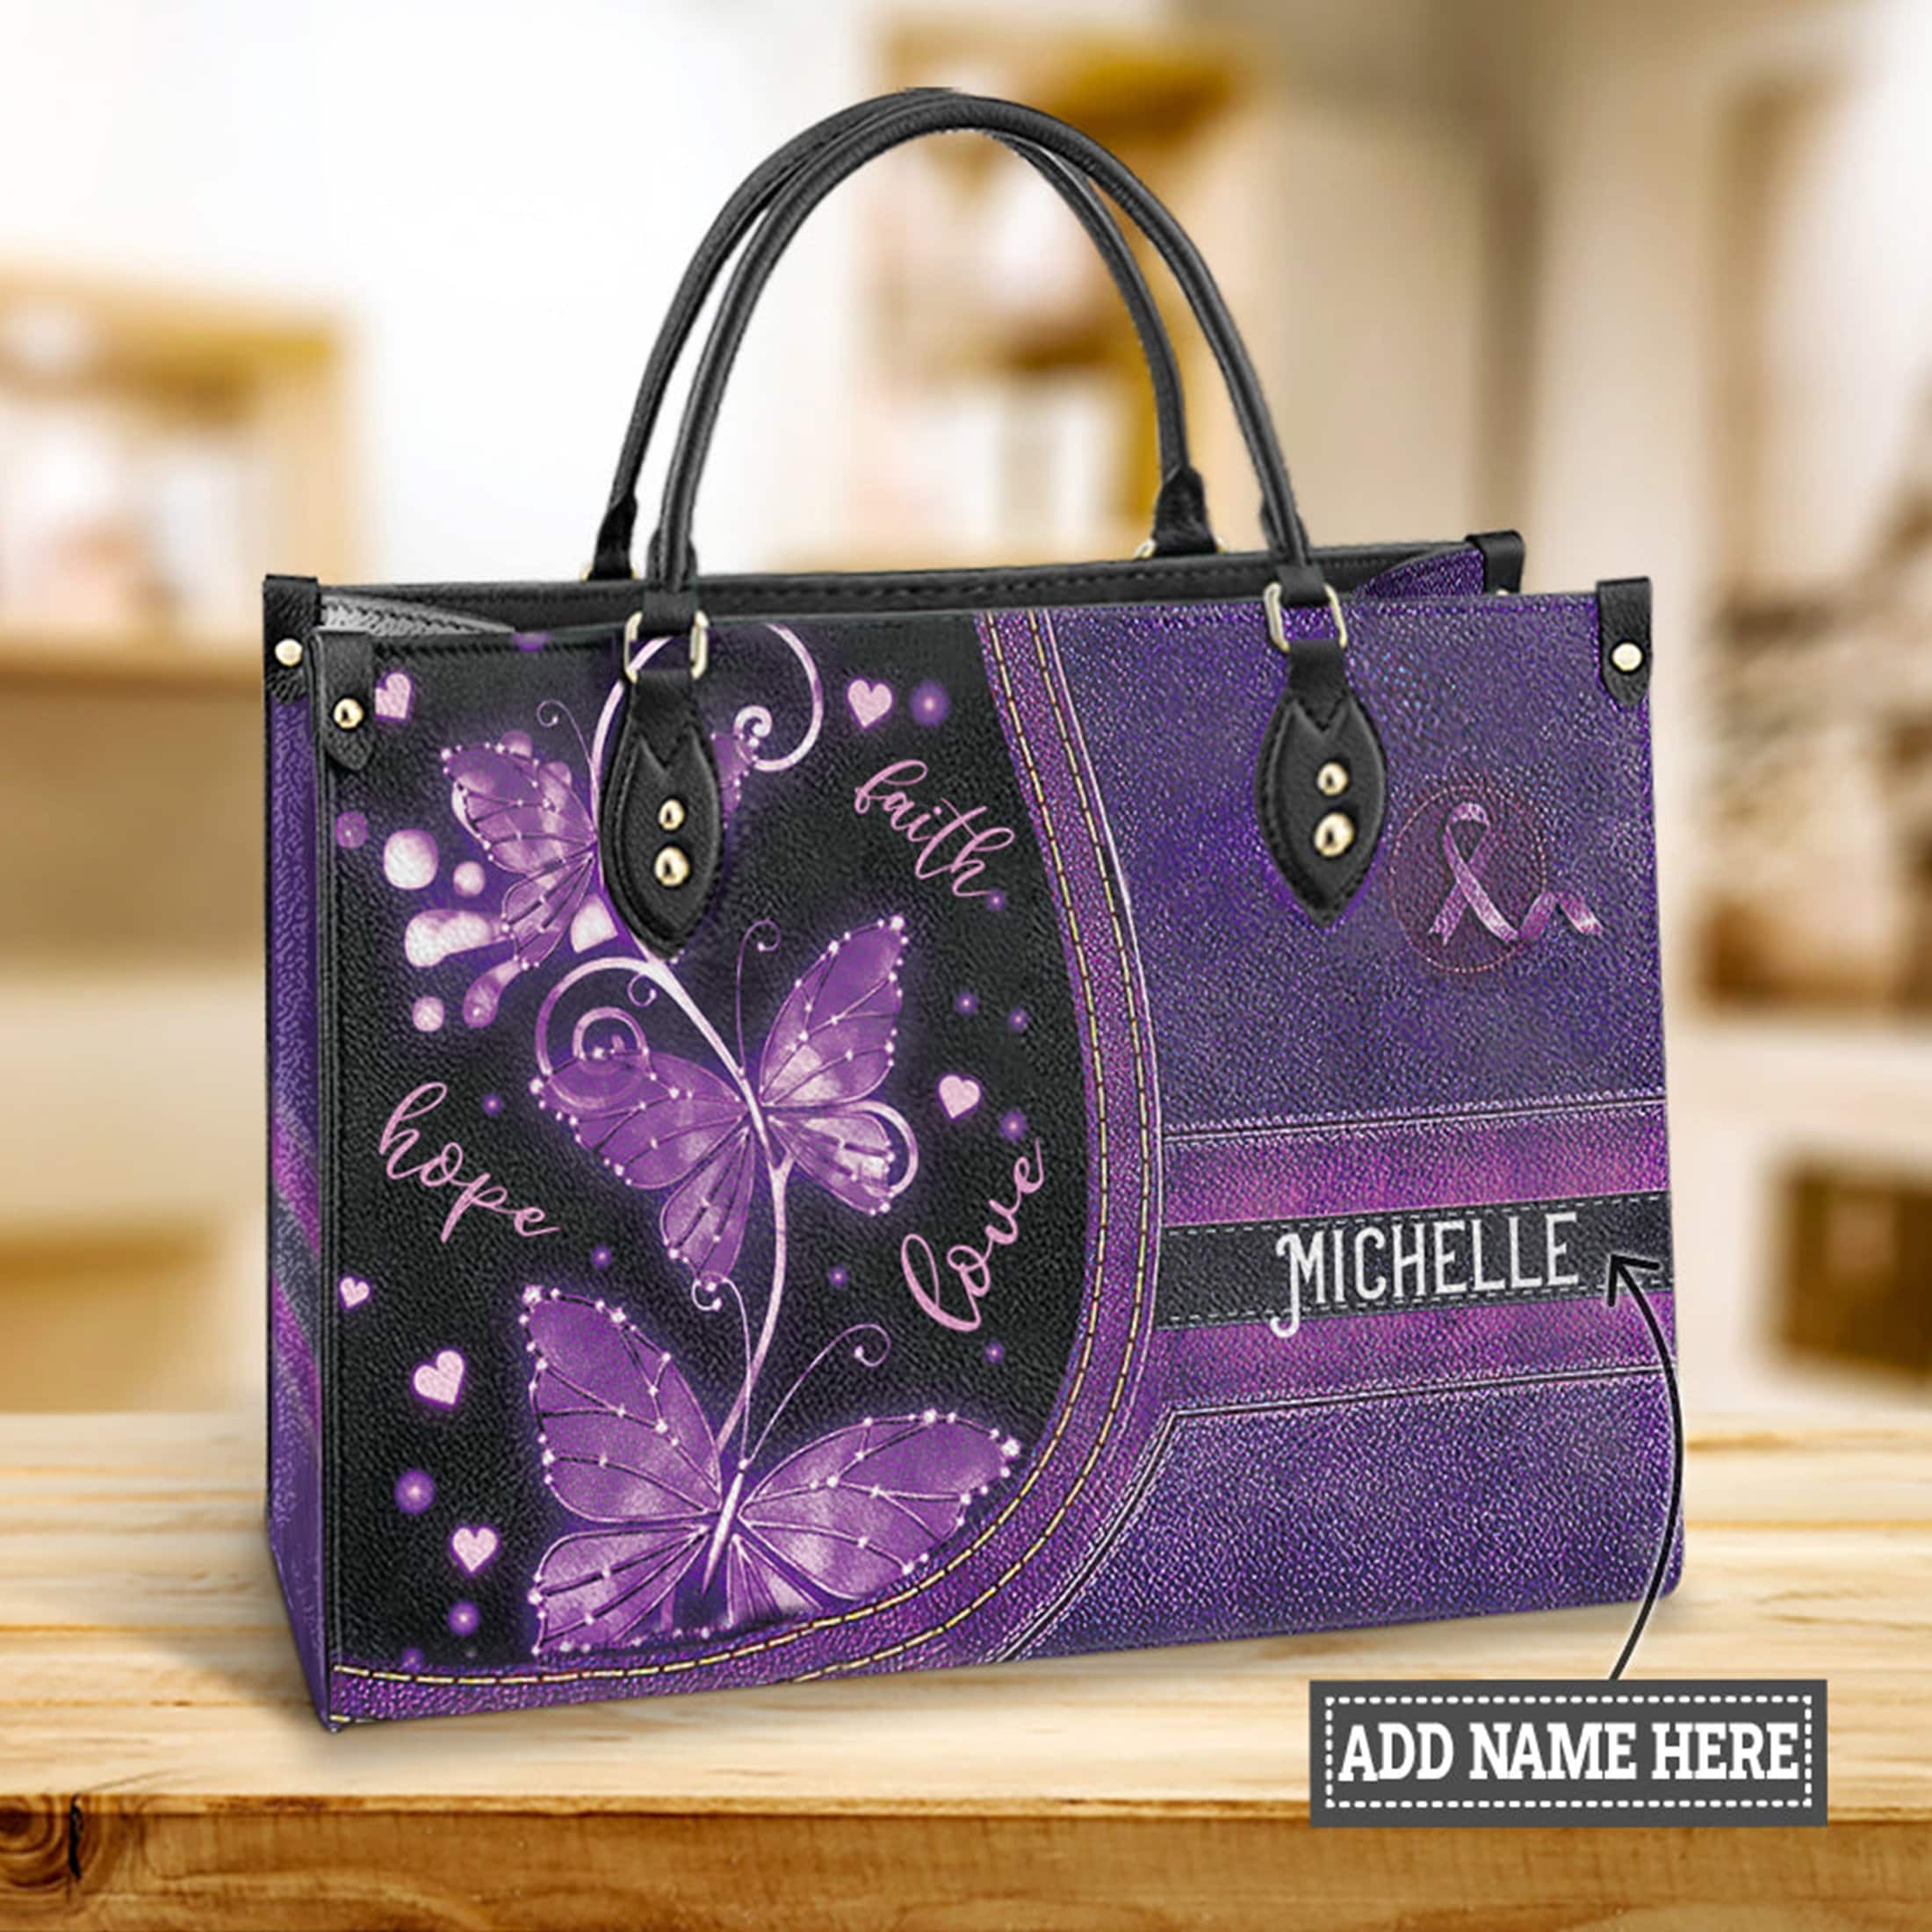 Girls Purple Bags - Buy Girls Purple Bags online in India